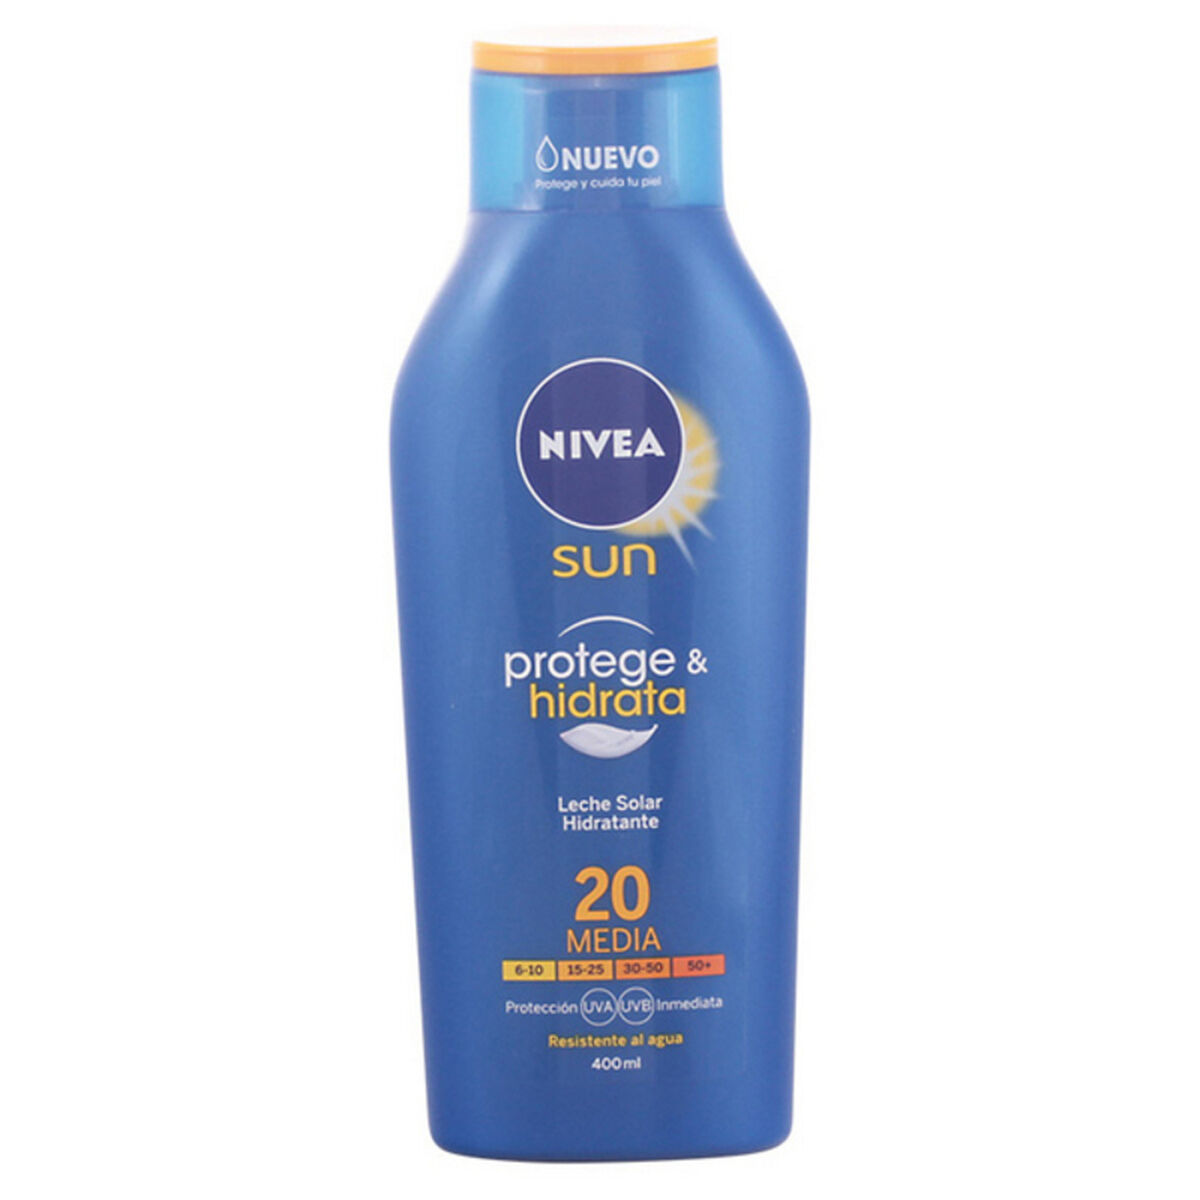 Sun Milk Protege & Hidrata Nivea SPF 20 (400 ml) 20 (400 ml)